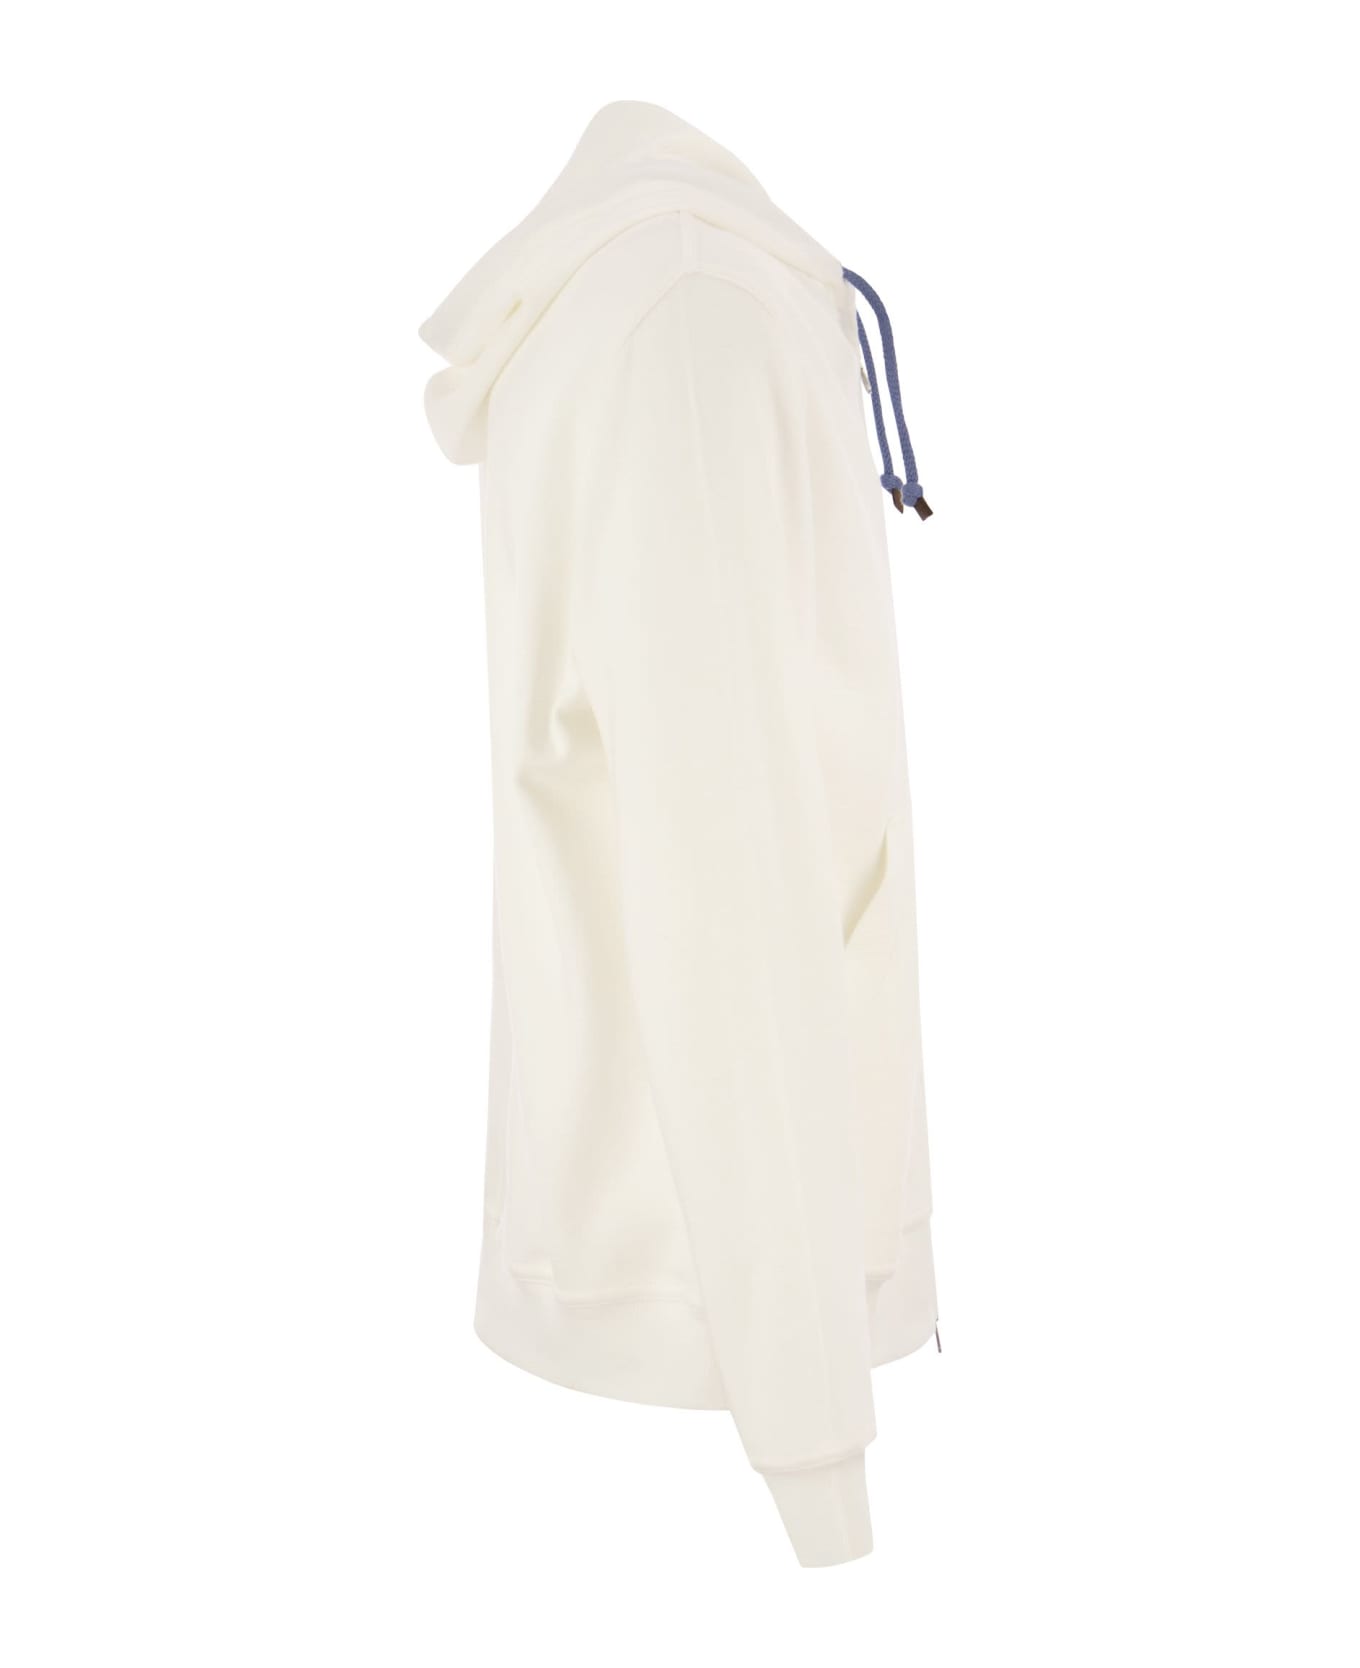 Brunello Cucinelli Techno Cotton Interlock Zip-front Hooded Sweatshirt - White